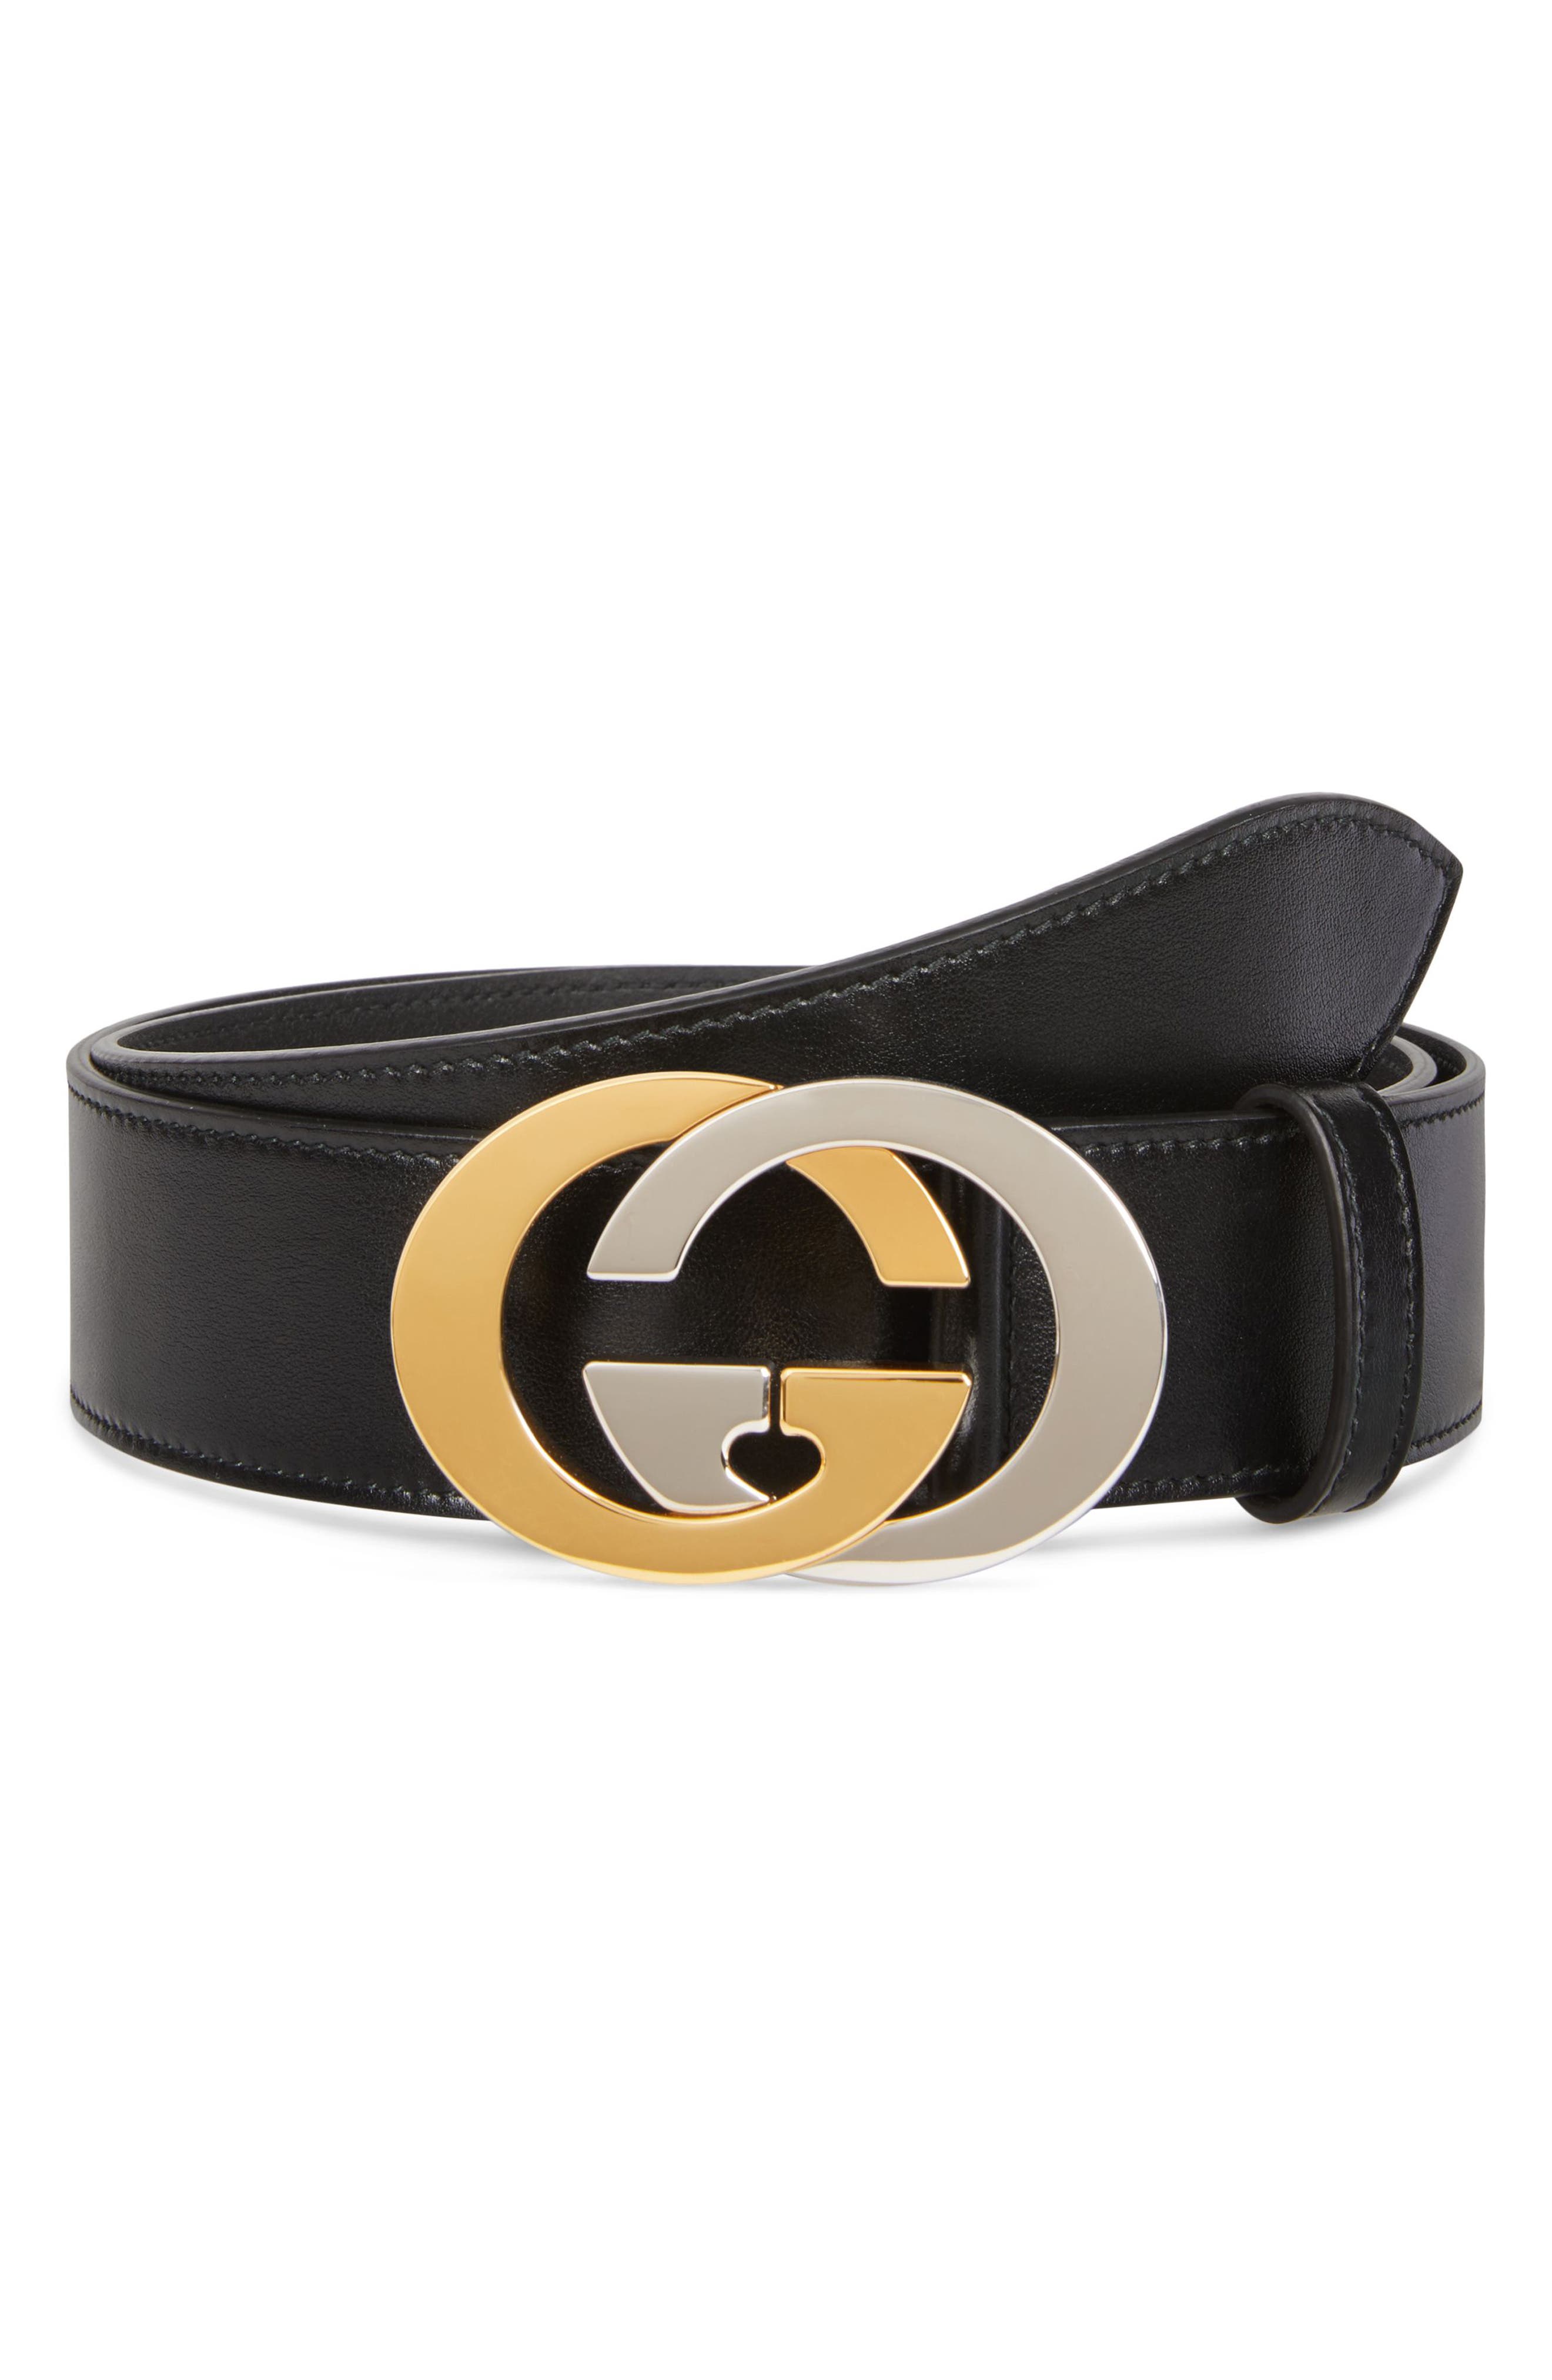 gg womens belt